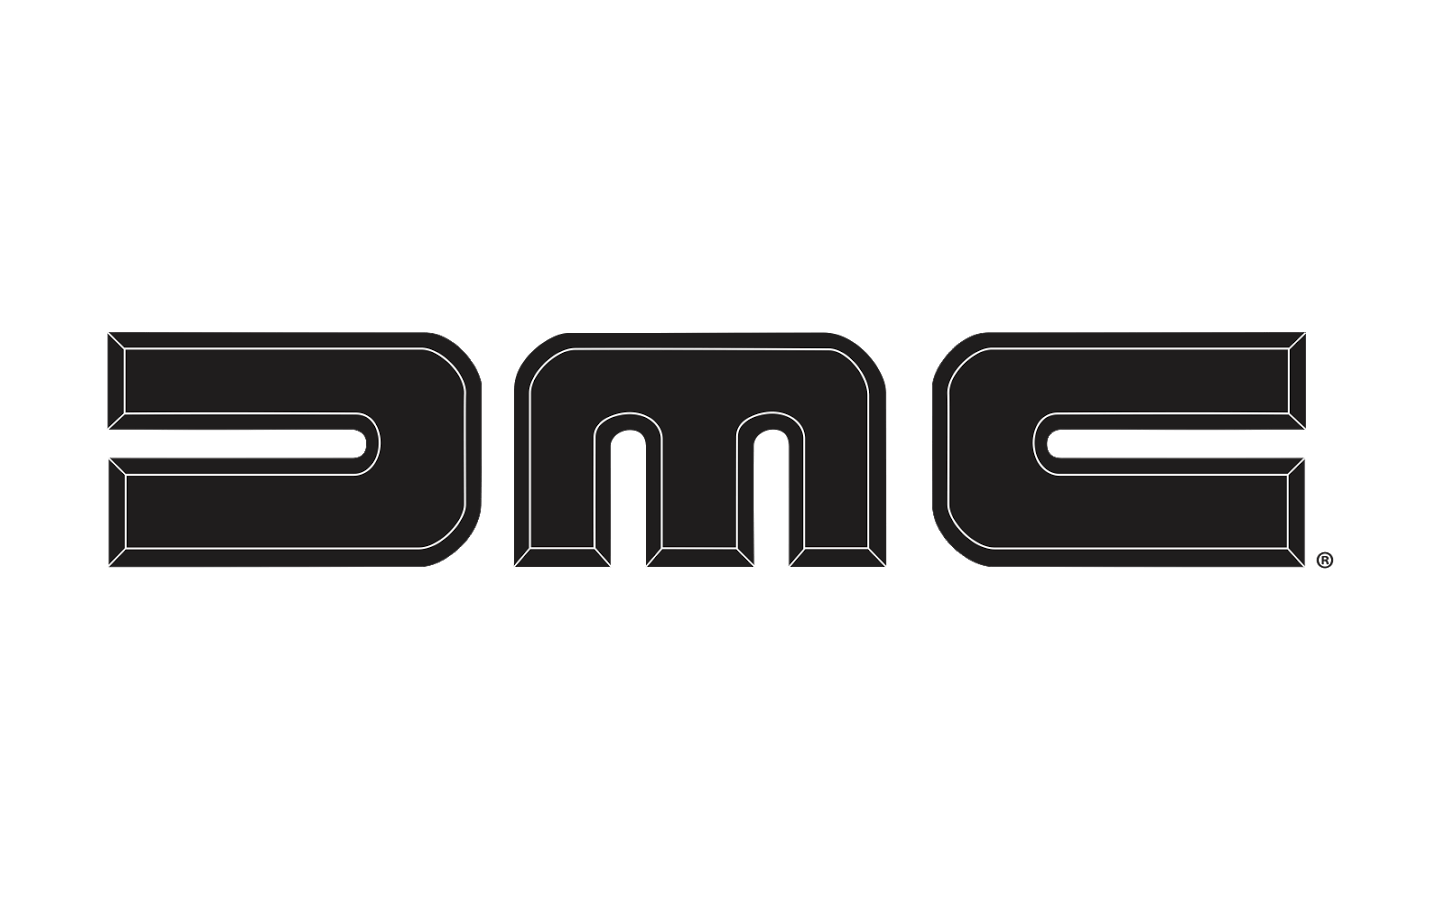 DMC Logo - Image - DMC-logo-1440x900.png | Logopedia | FANDOM powered by Wikia